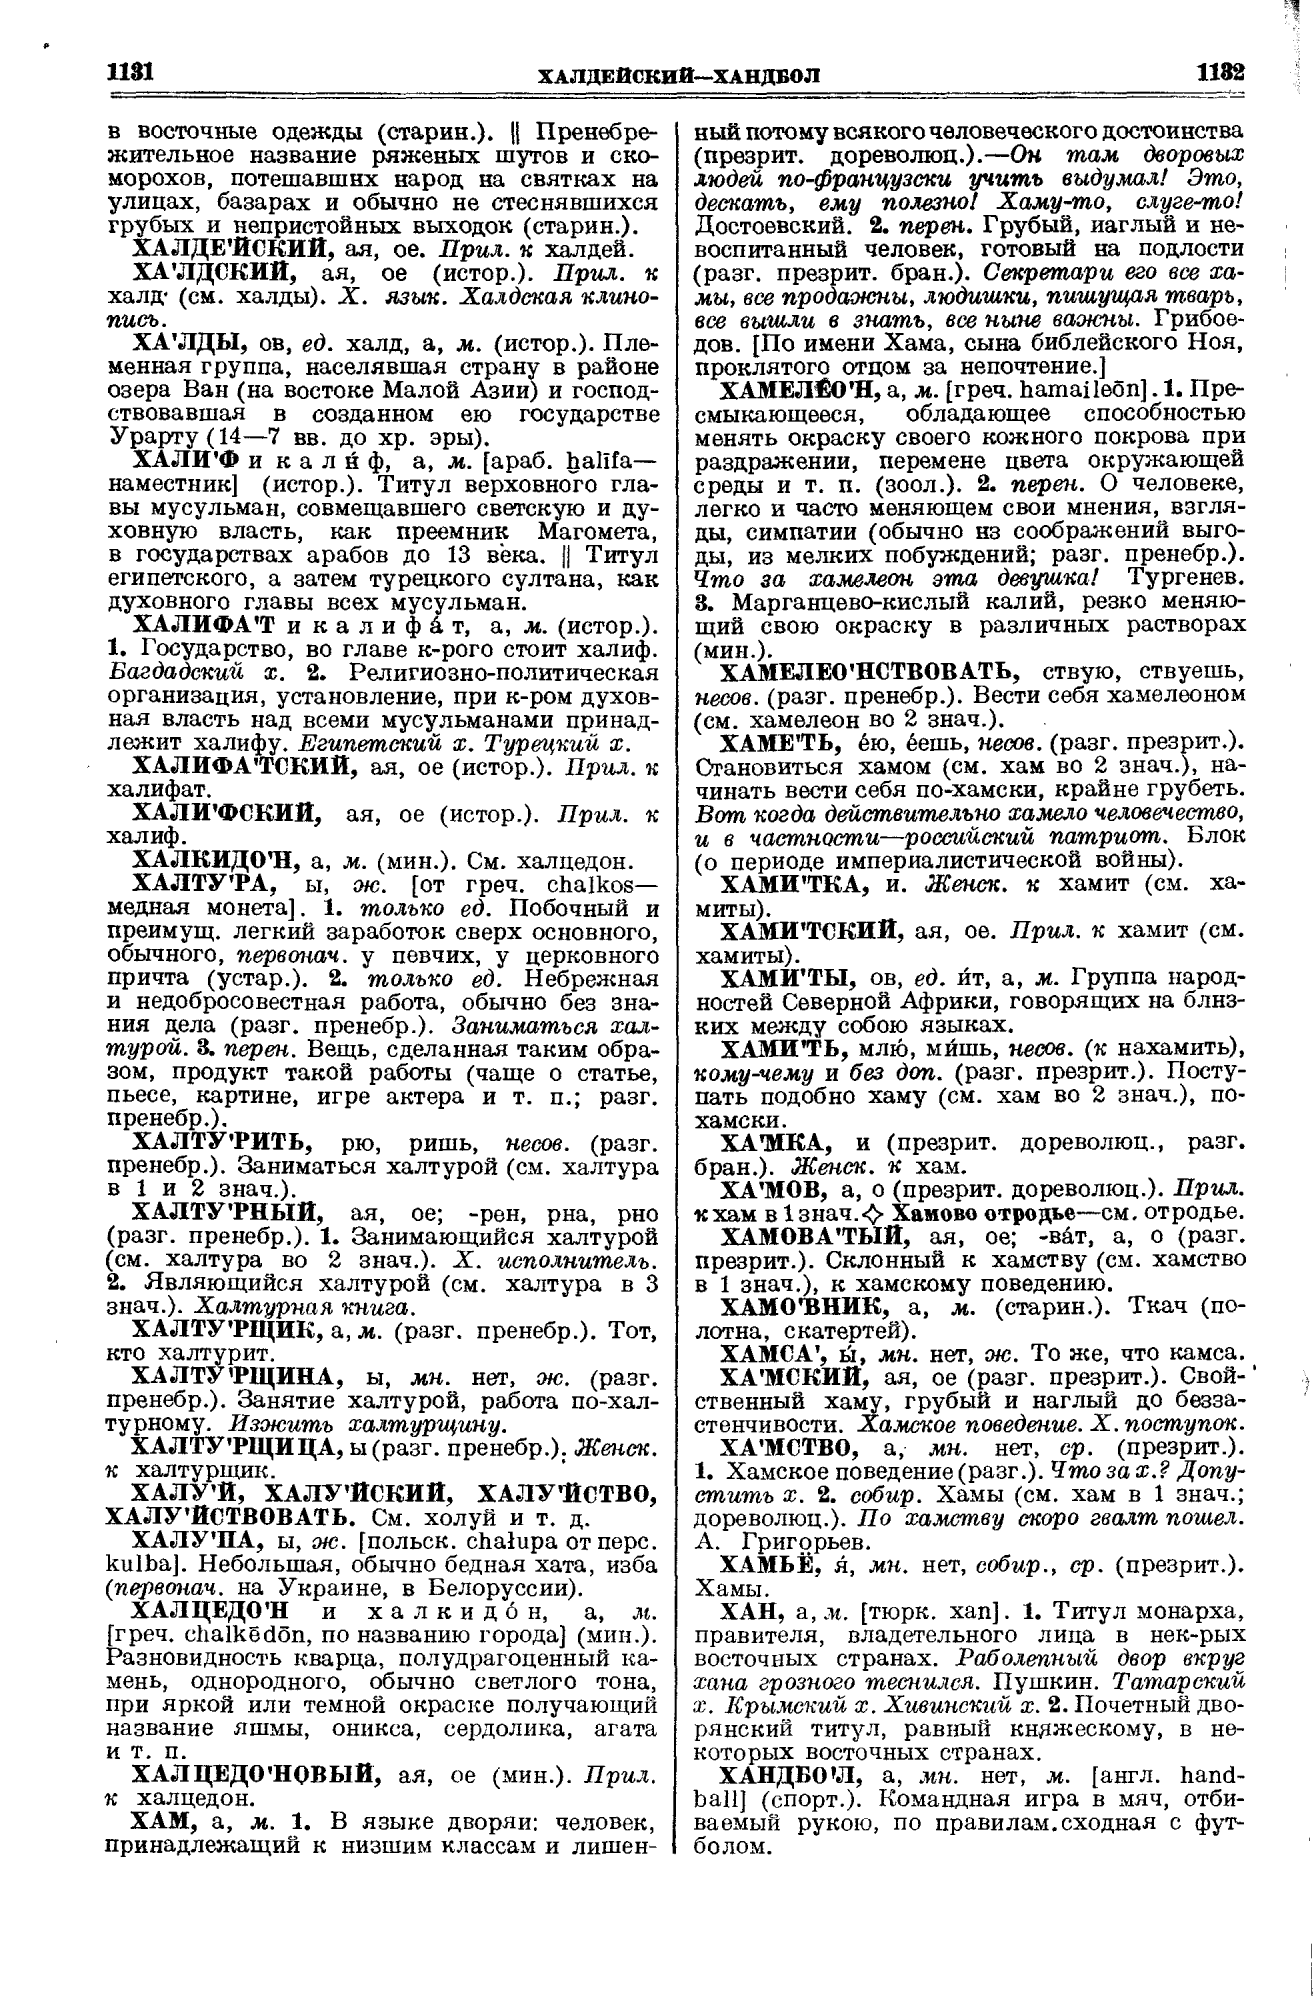 Фотокопия pdf / скан страницы 566 толкового словаря Ушакова (том 1)